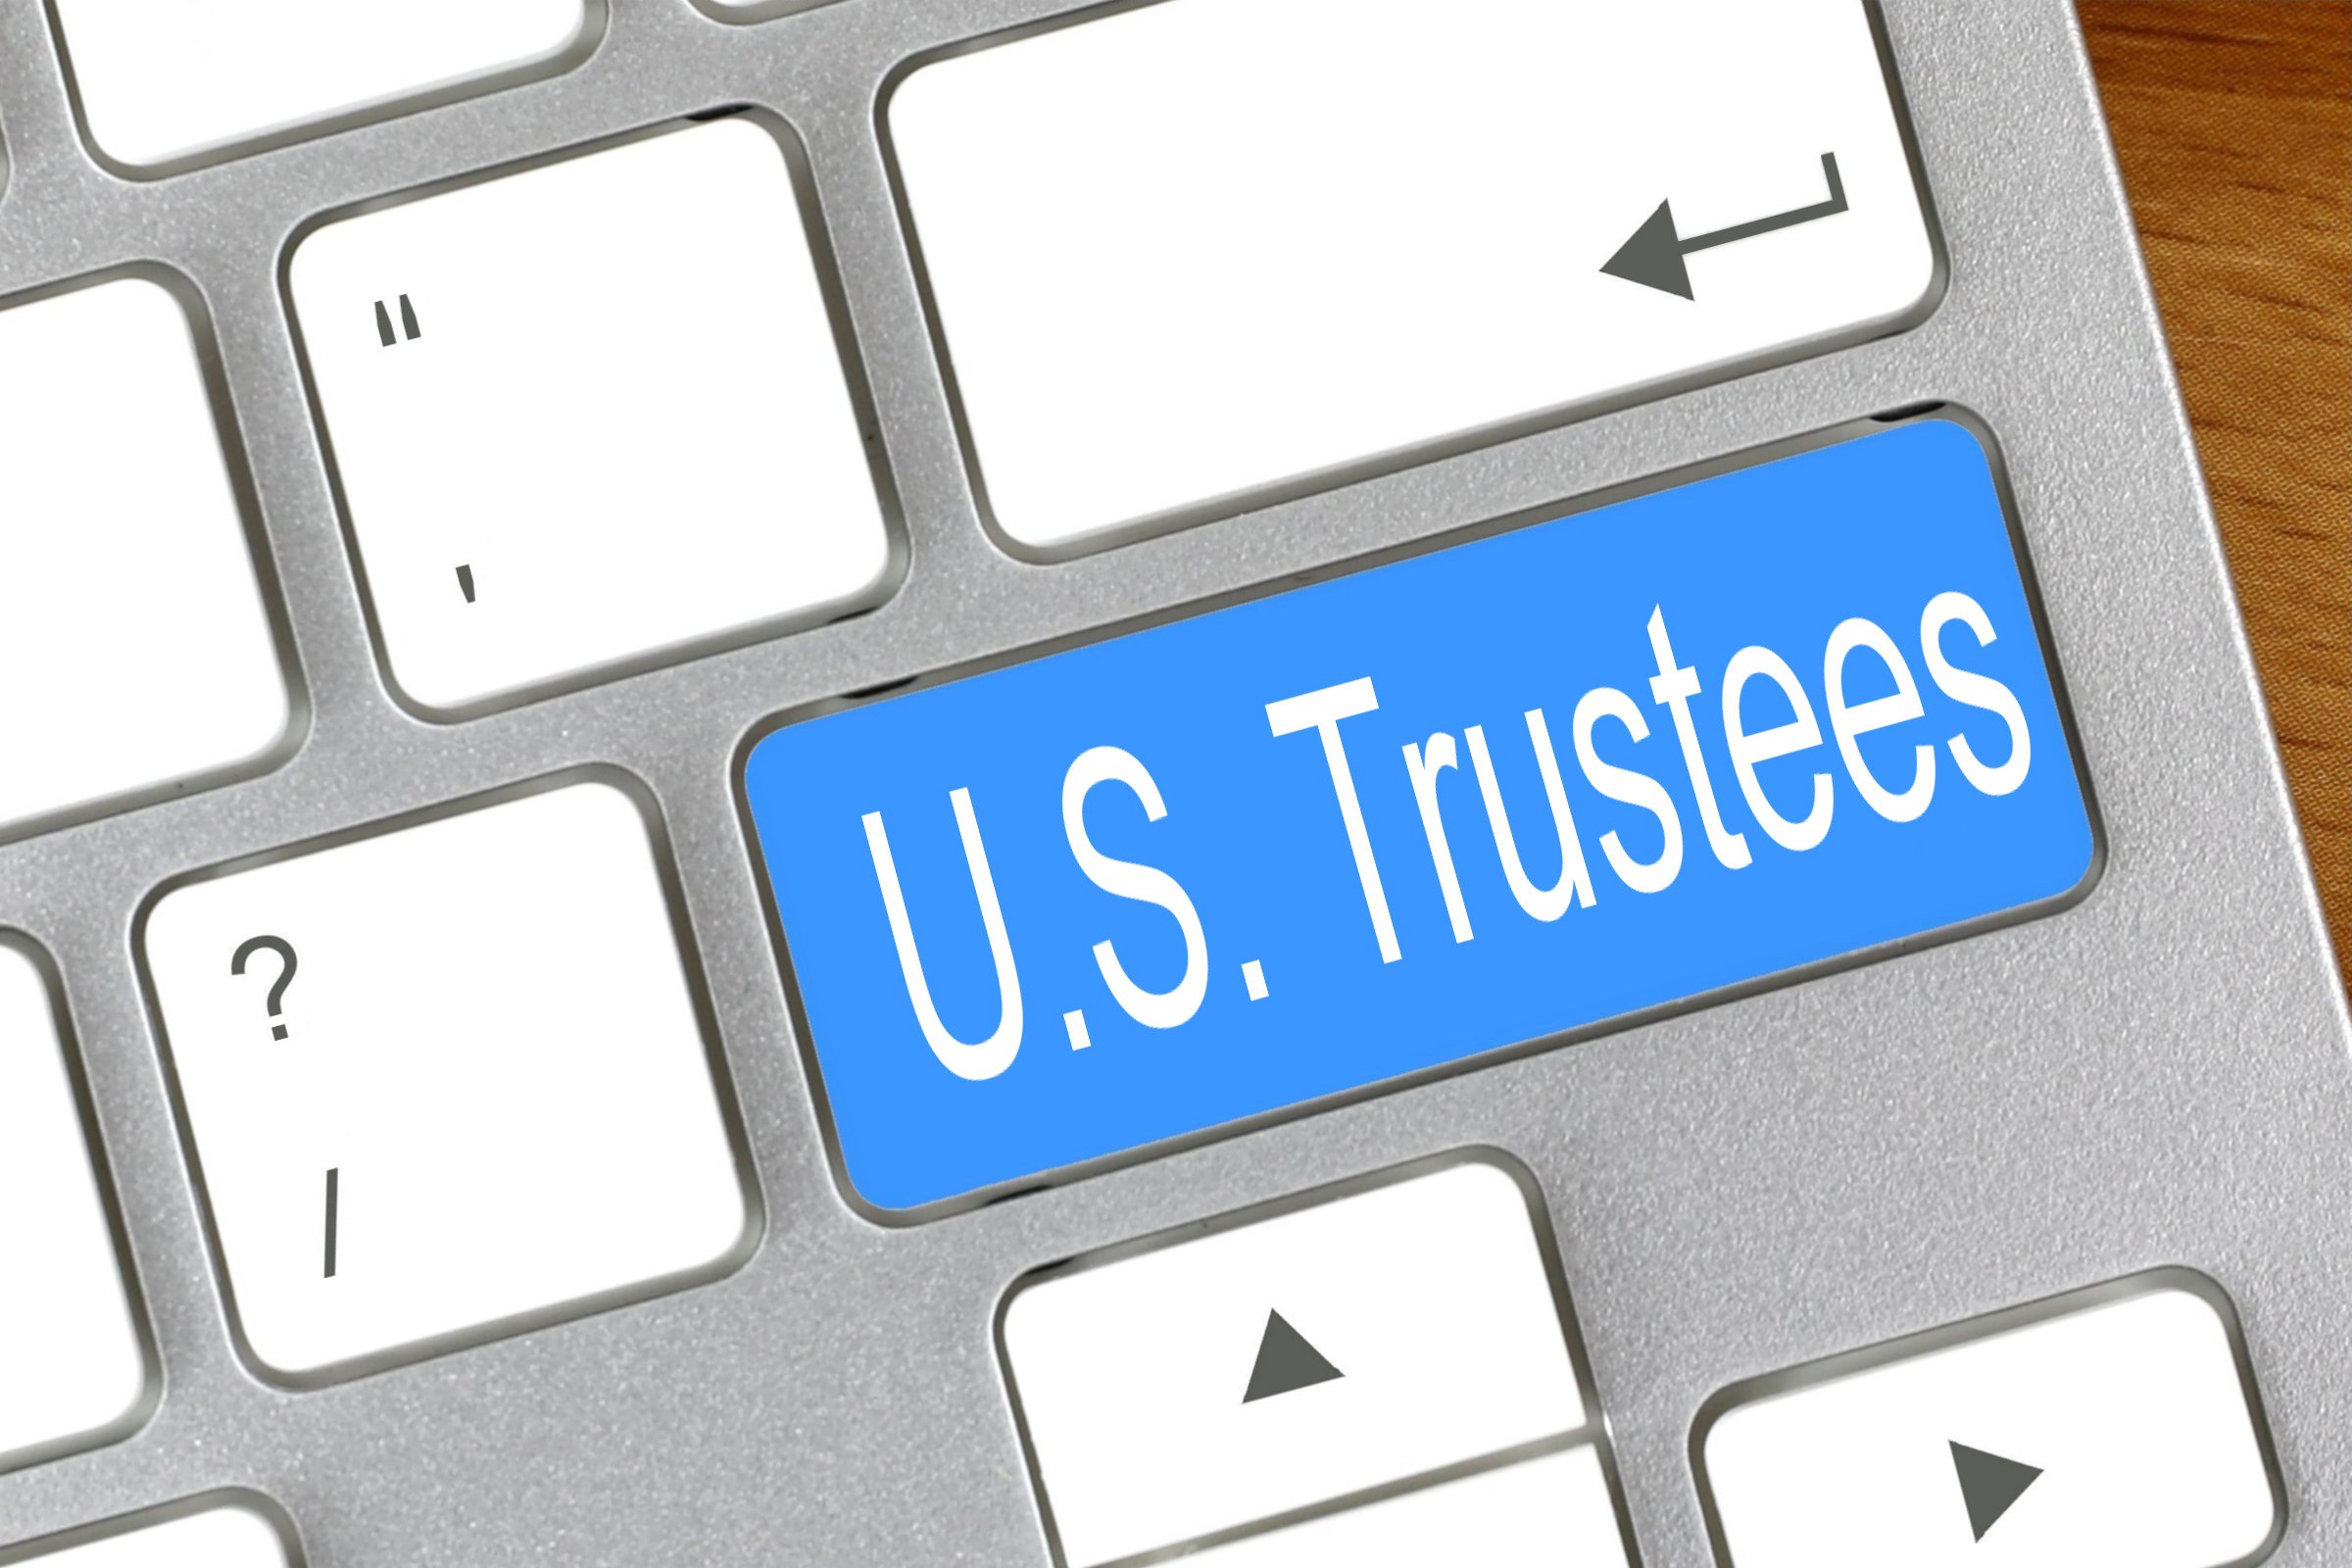 US Trustees